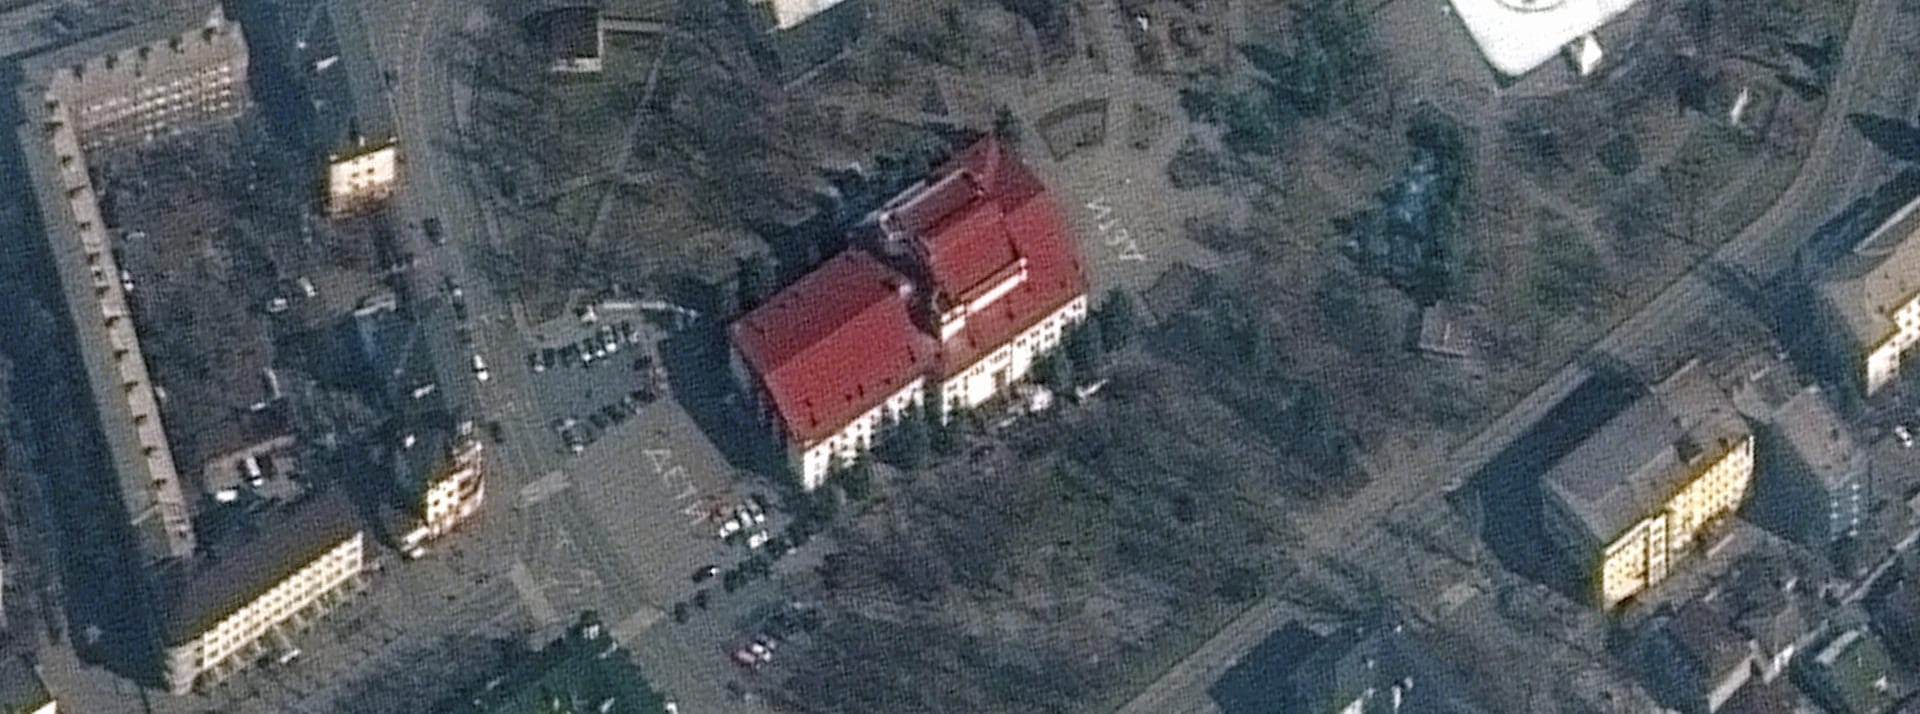 Das Satellitenbild zeigt das Theater in Mariupol vor einem Bombenangriff.